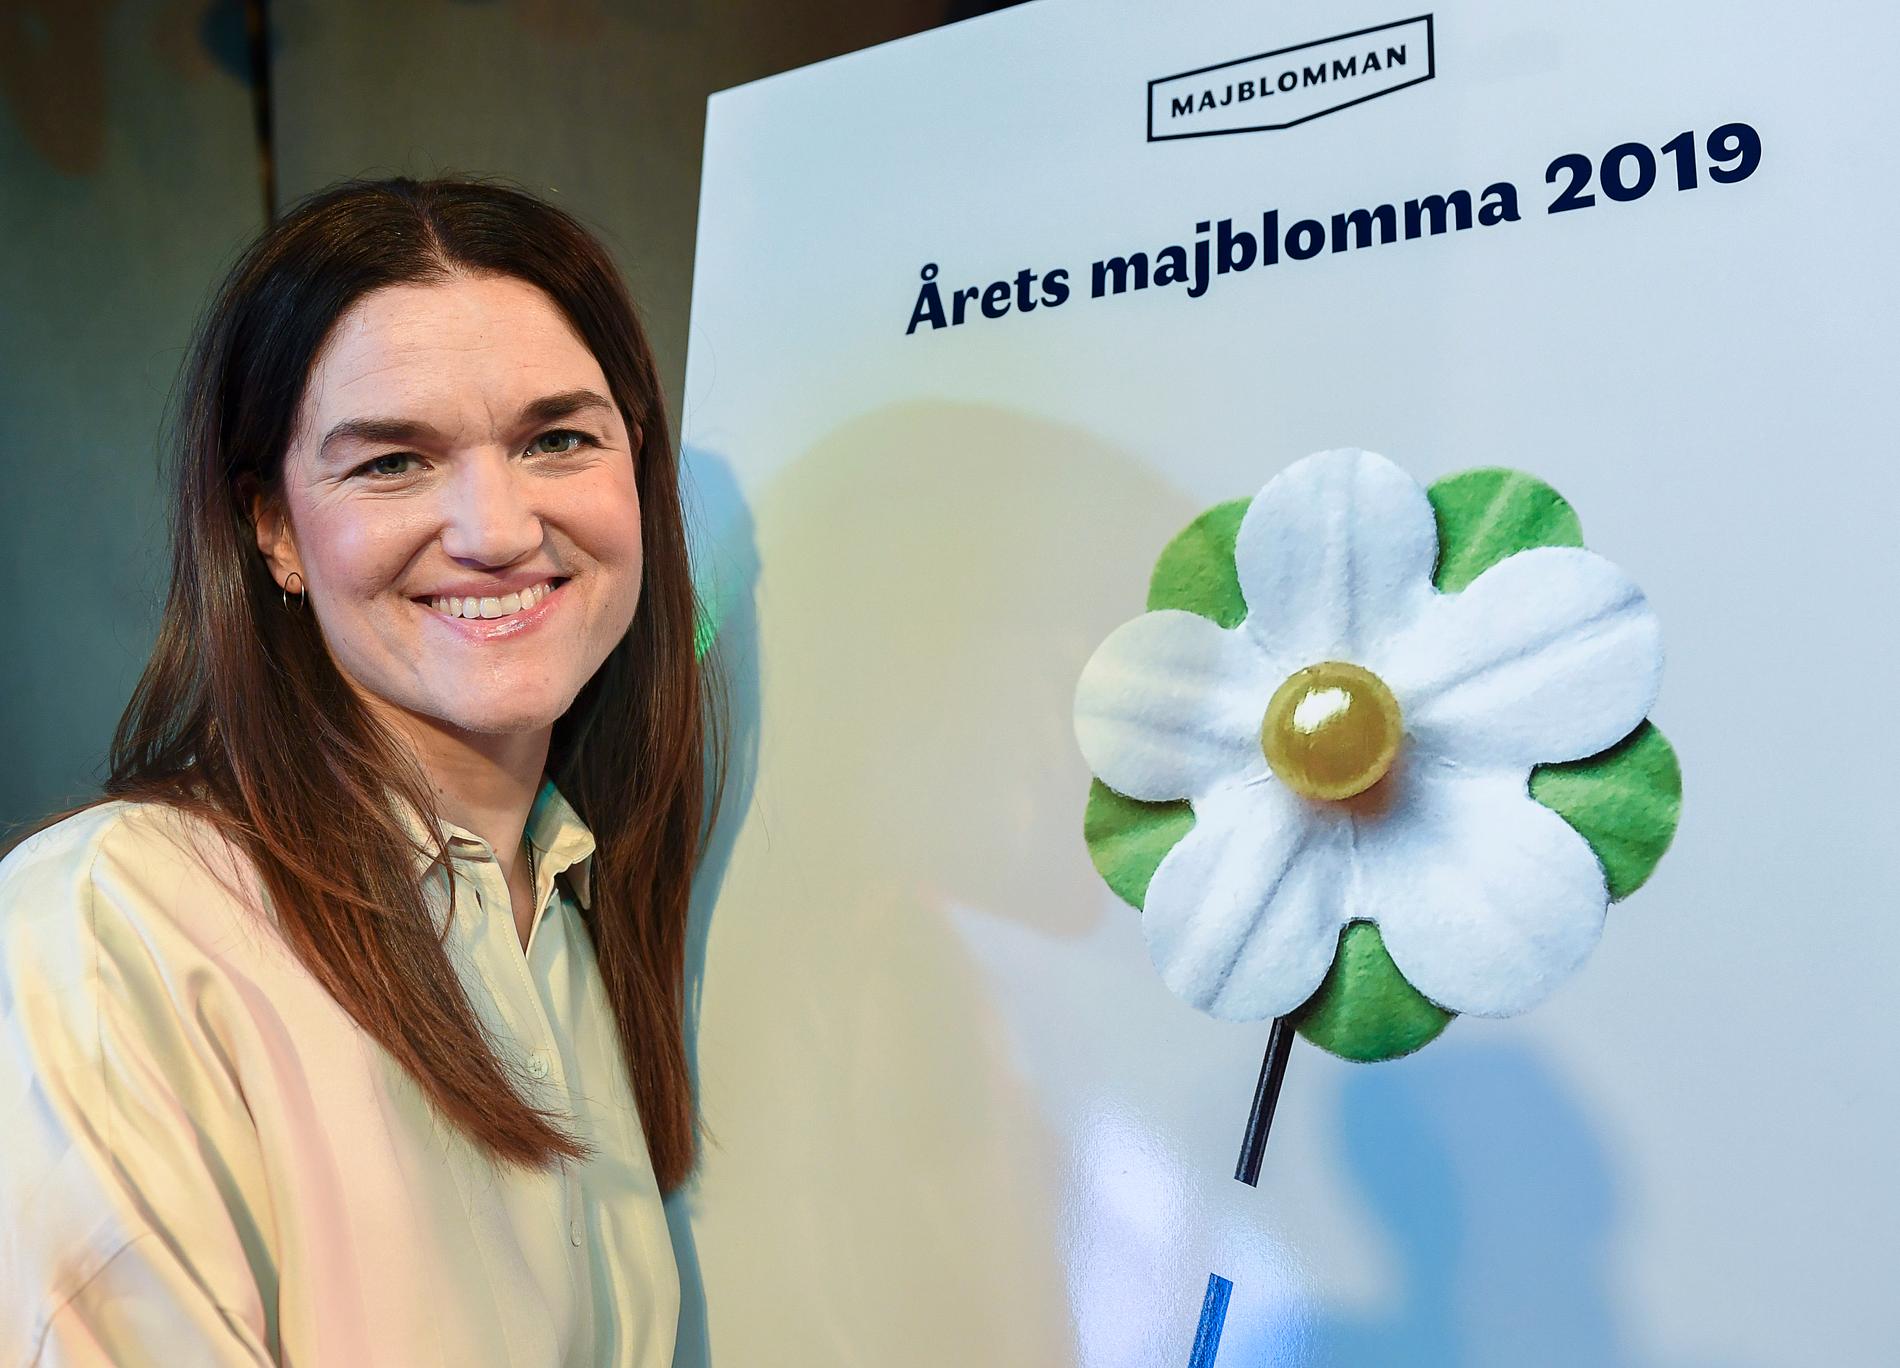 Majblommans generalsekreterare Tove Lindahl Greve presenterar majblomman 2019 som i år är designad av 13-åriga Saga från Stockholm. Hennes förslag gick till final, och fick flest röster på Majblommans hemsida.